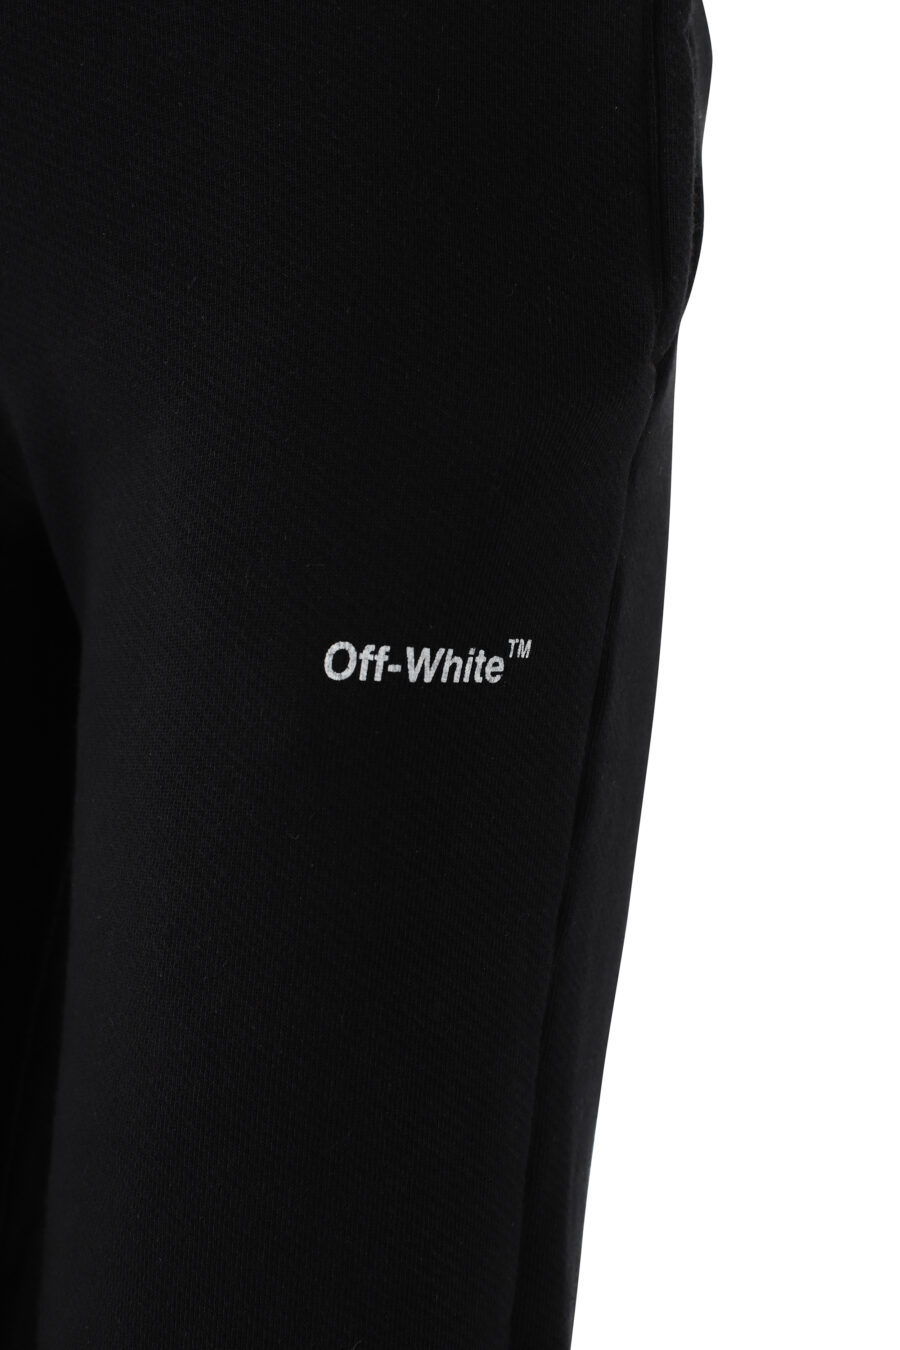 Pantalon de chandal negro con logo blanco "Diag" - IMG 5068